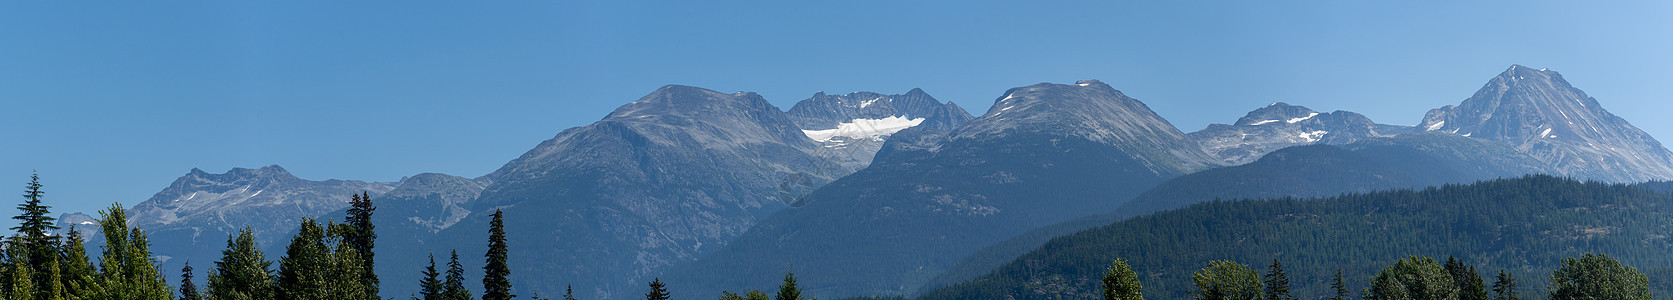 加拿大不列颠哥伦比亚省惠斯勒山全景图片